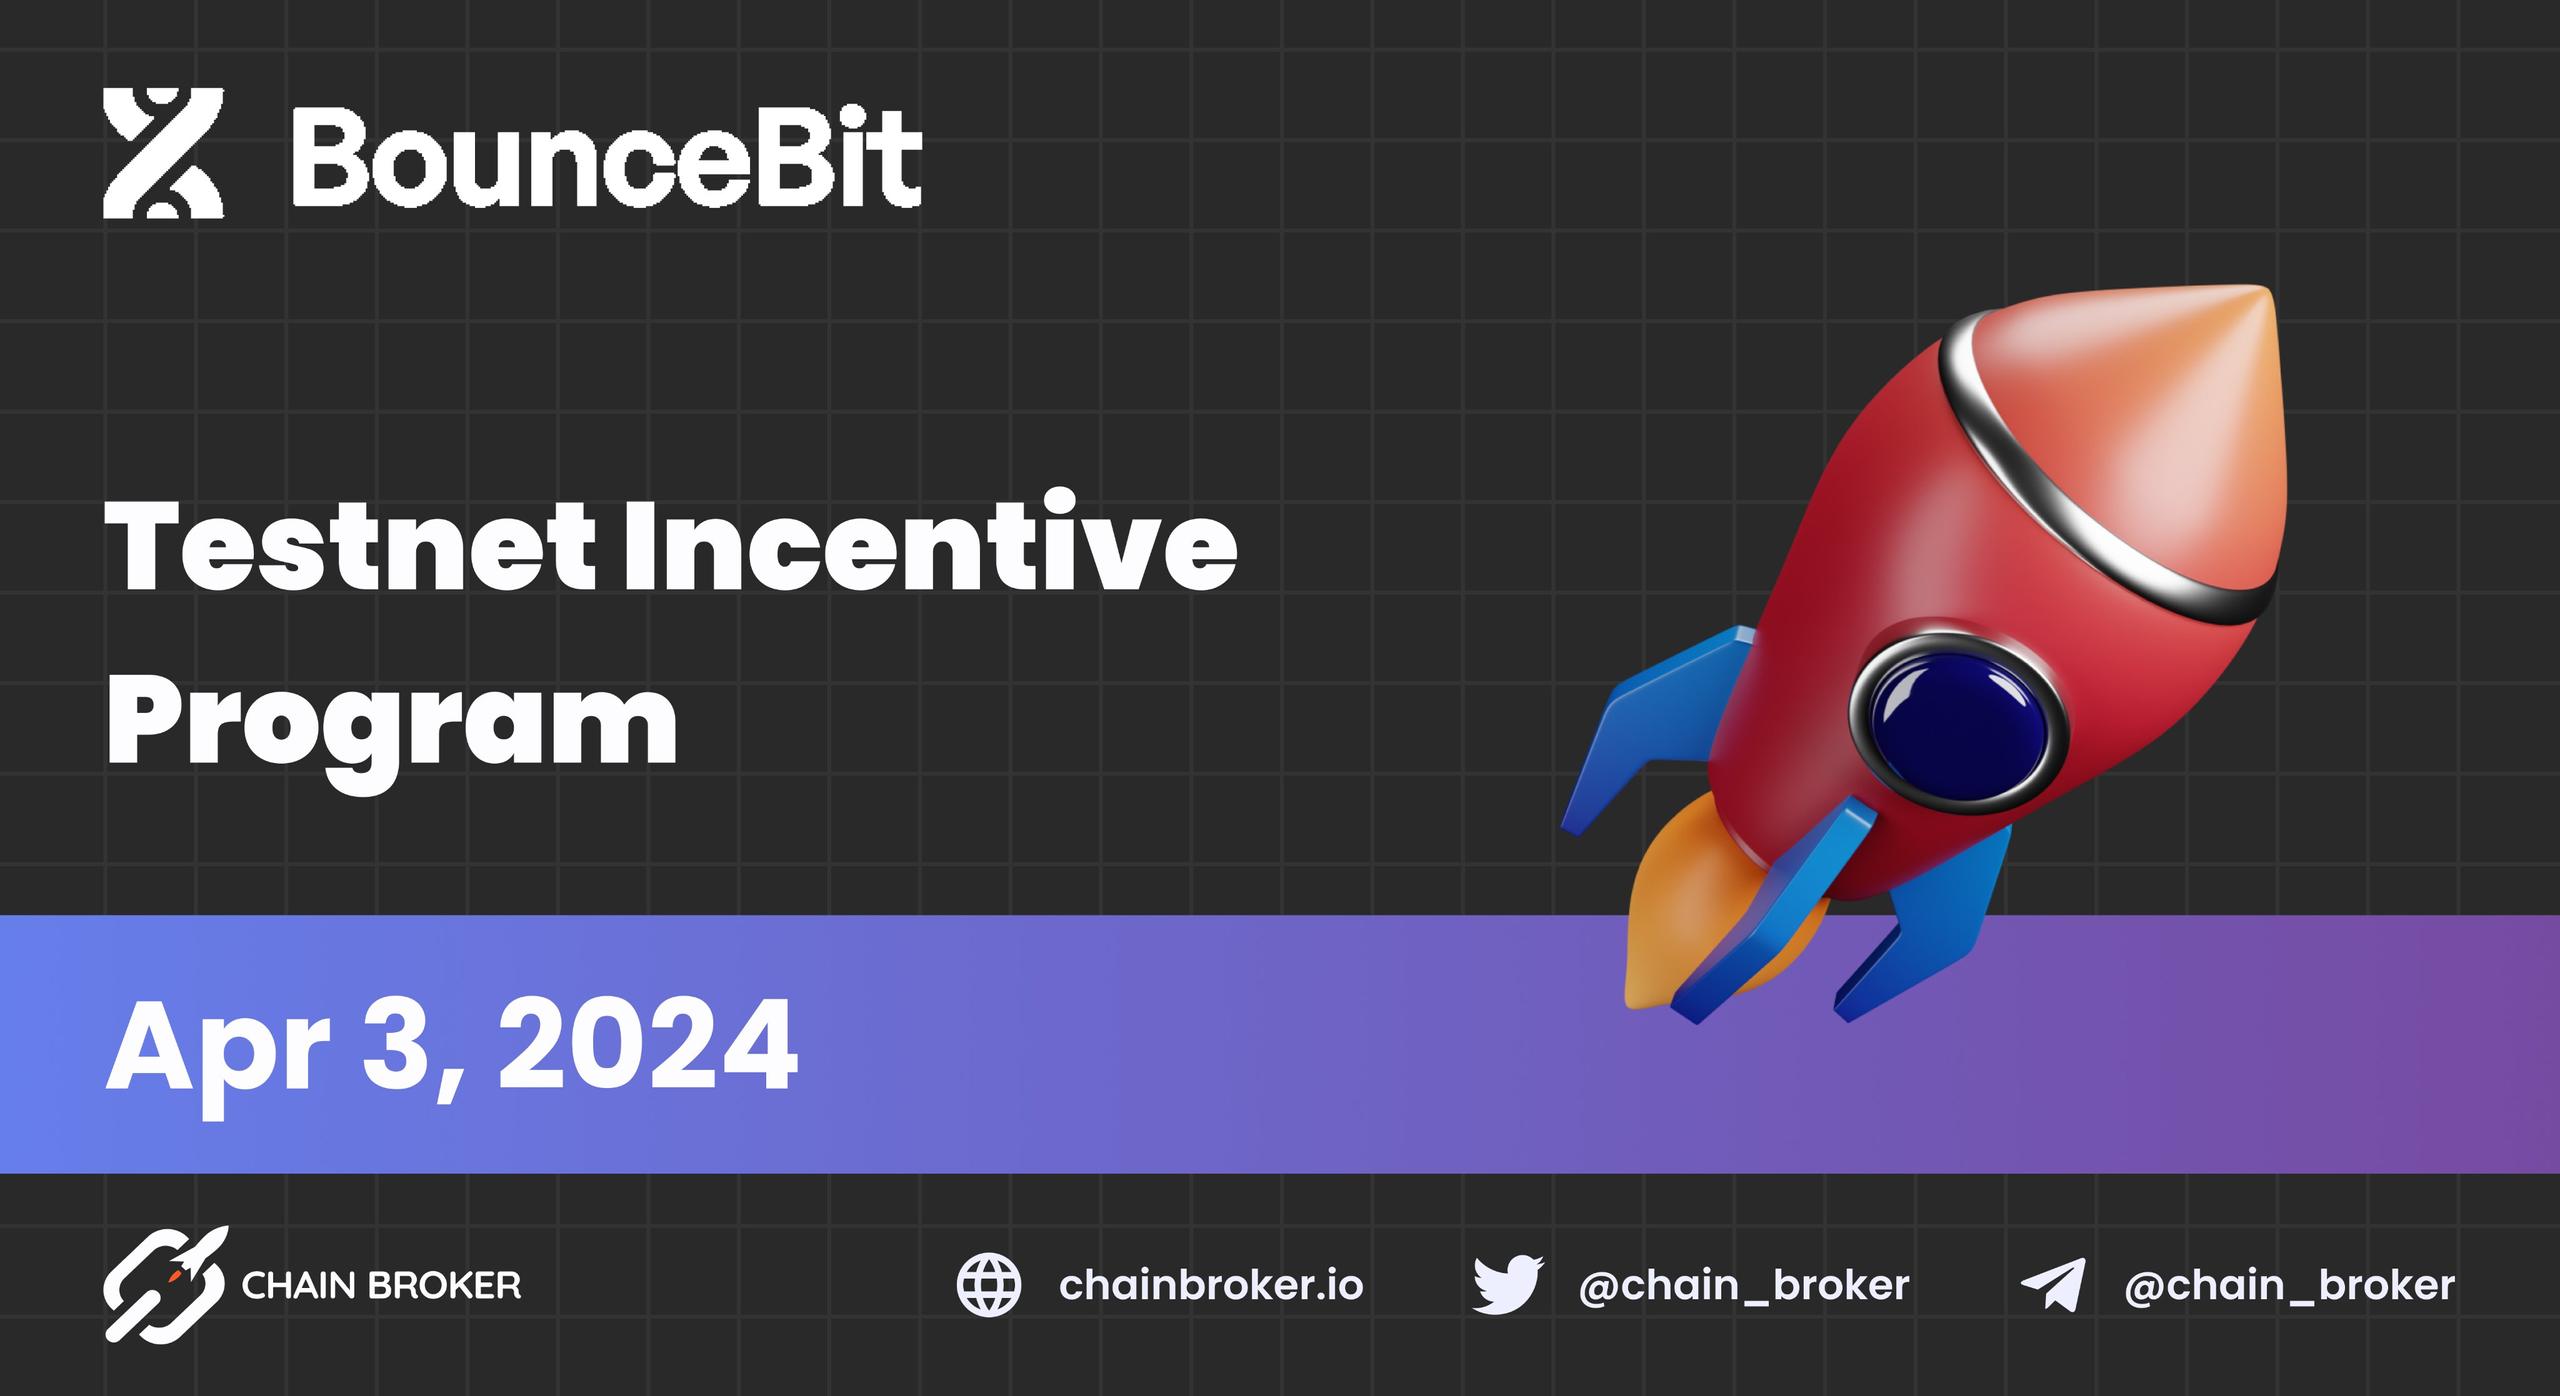 BounceBit launches a 100M BIT Points Incentive Program